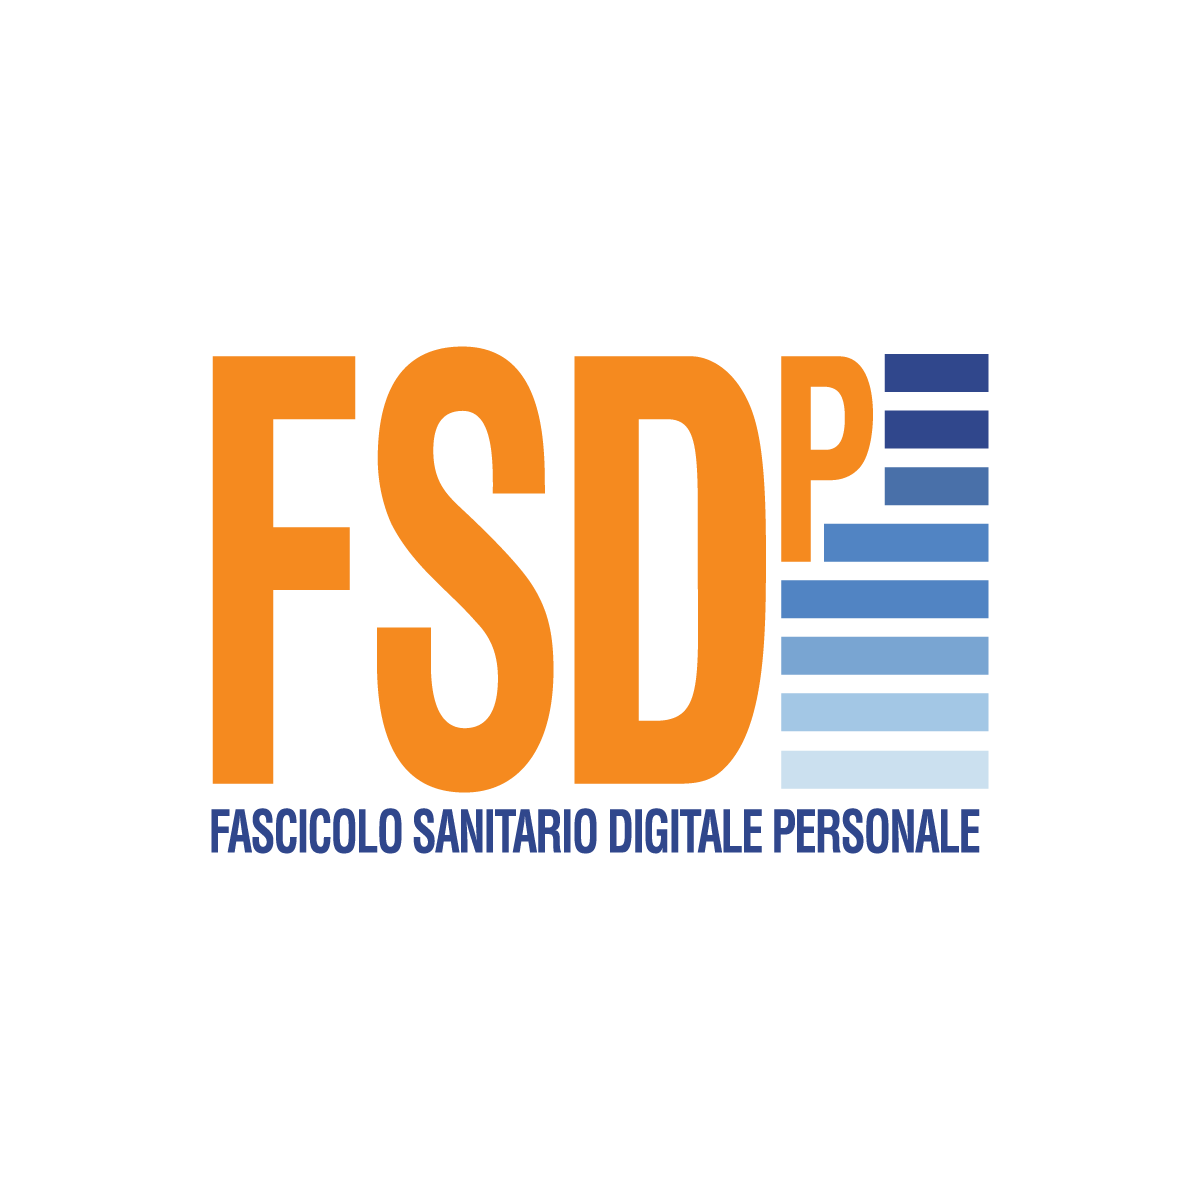 FSDP